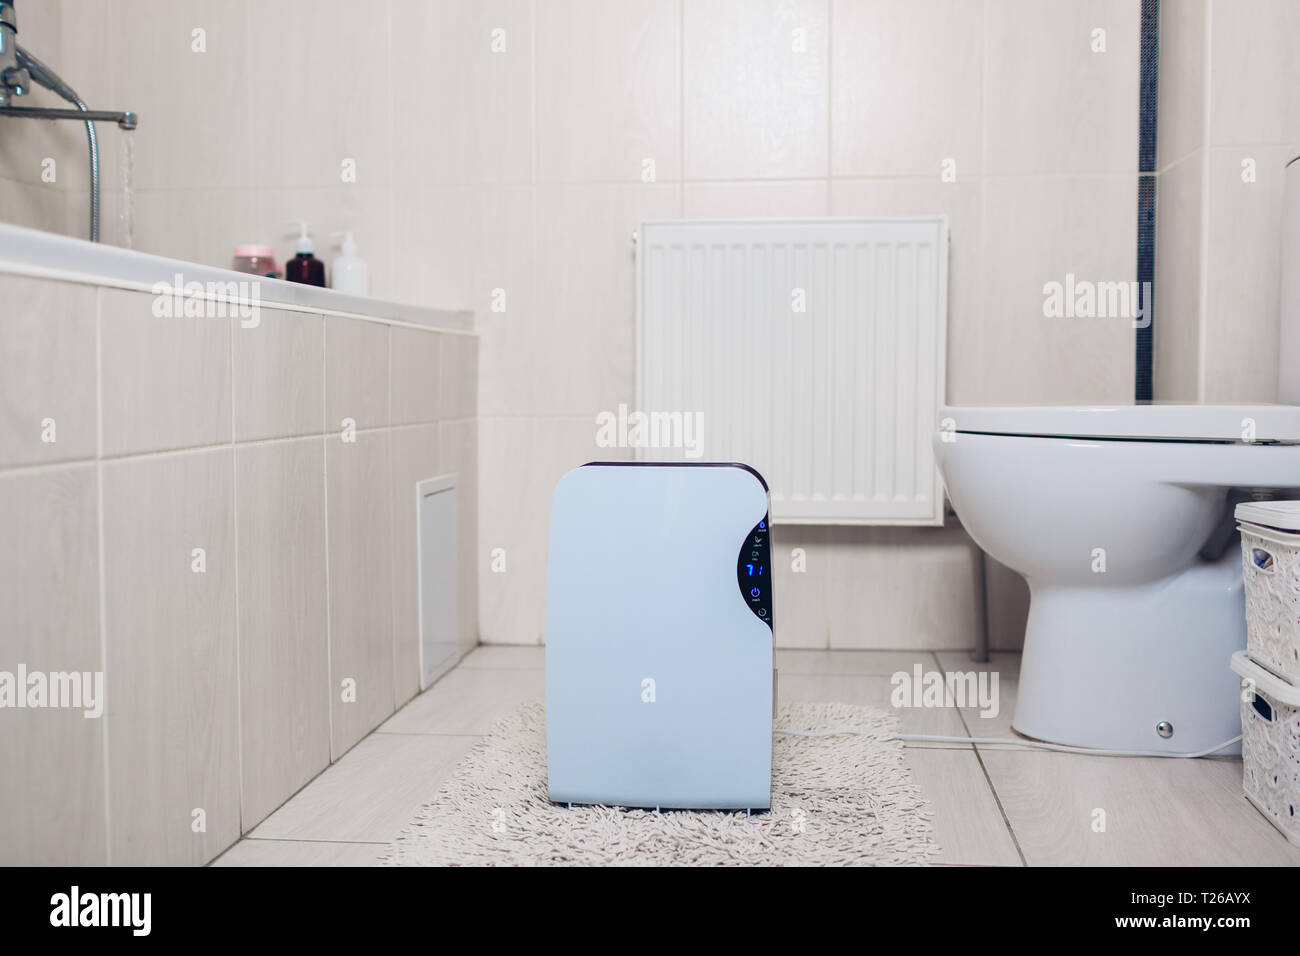 Luftentfeuchter mit Touch Panel, Feuchtigkeit, UV-Lampe, Luftionisators,  Wasser Behälter arbeitet zu Hause im Badezimmer. Lufttrockner  Stockfotografie - Alamy